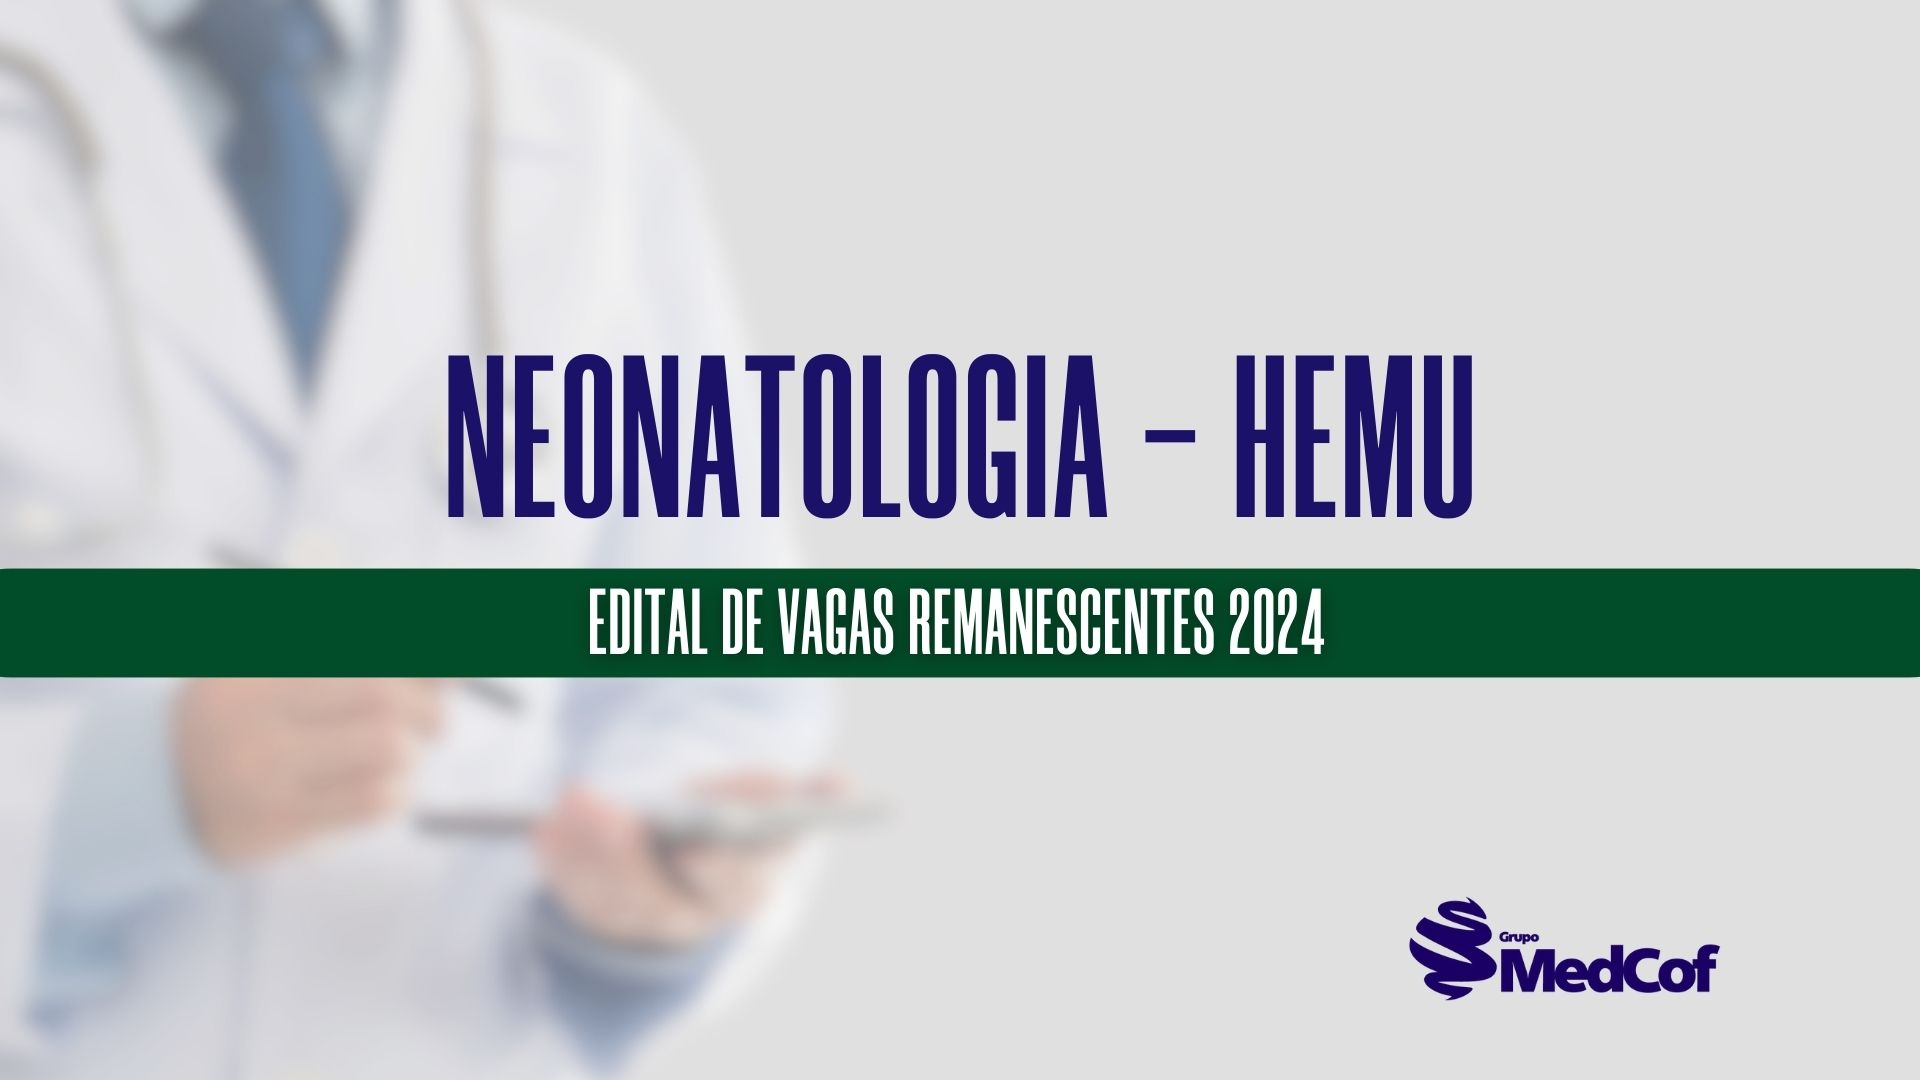 neonatologia hemu 2024 vagas remanescentes residência médica